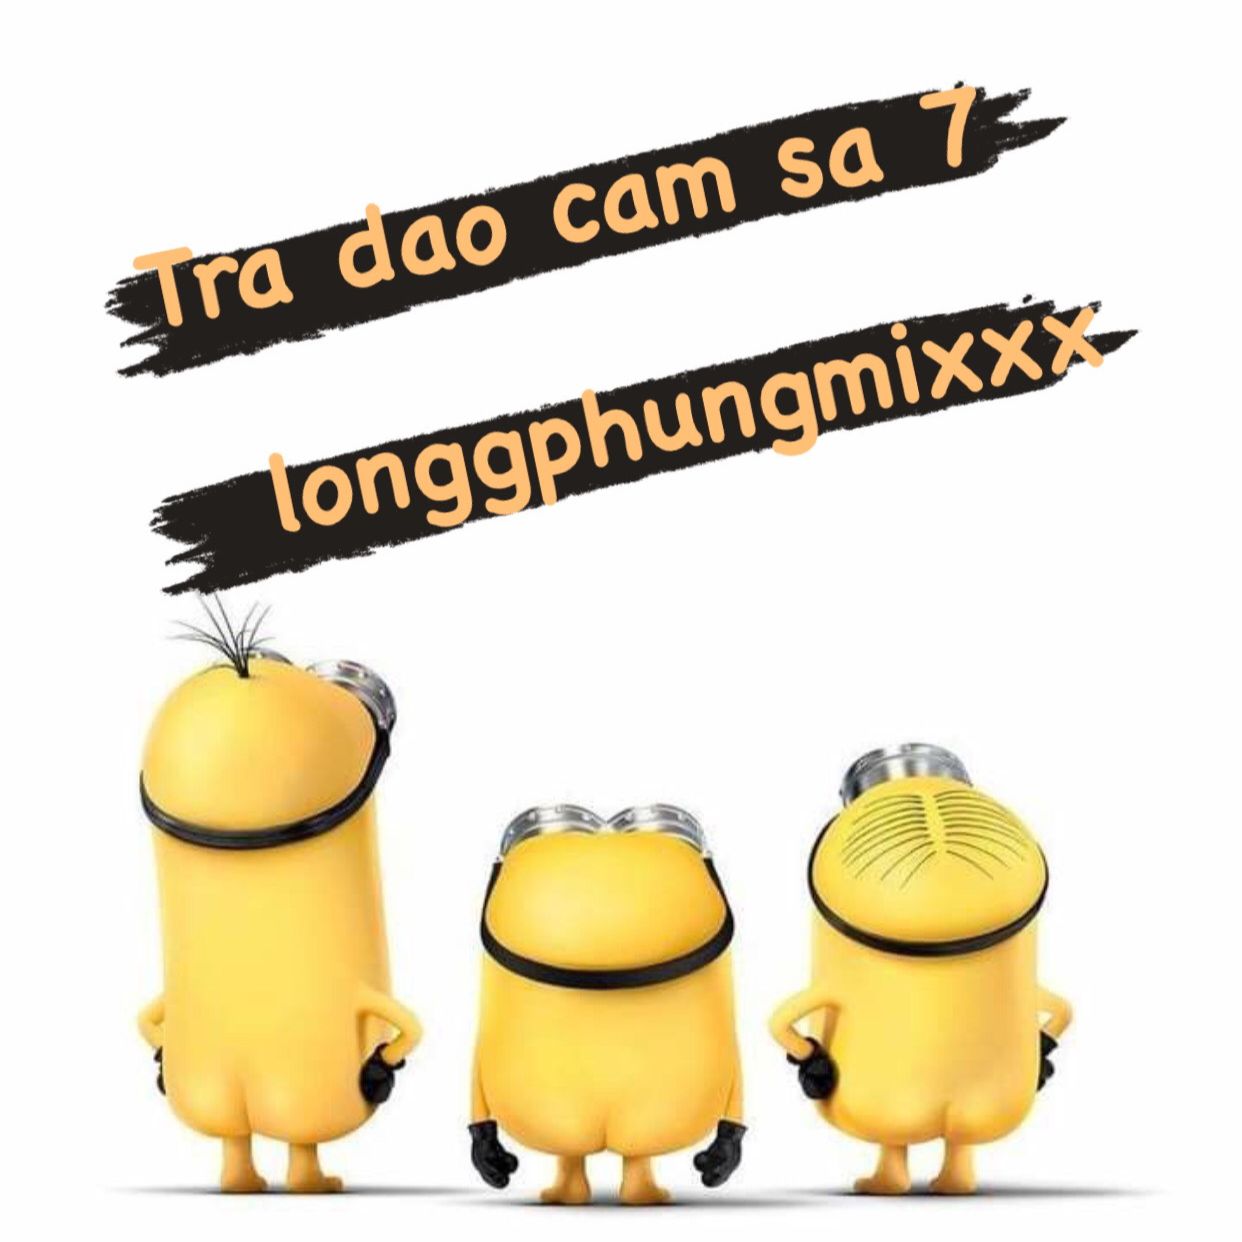 ¡Descargar Tra Dao Cam Sa 7 - 132 longgphungmixxx